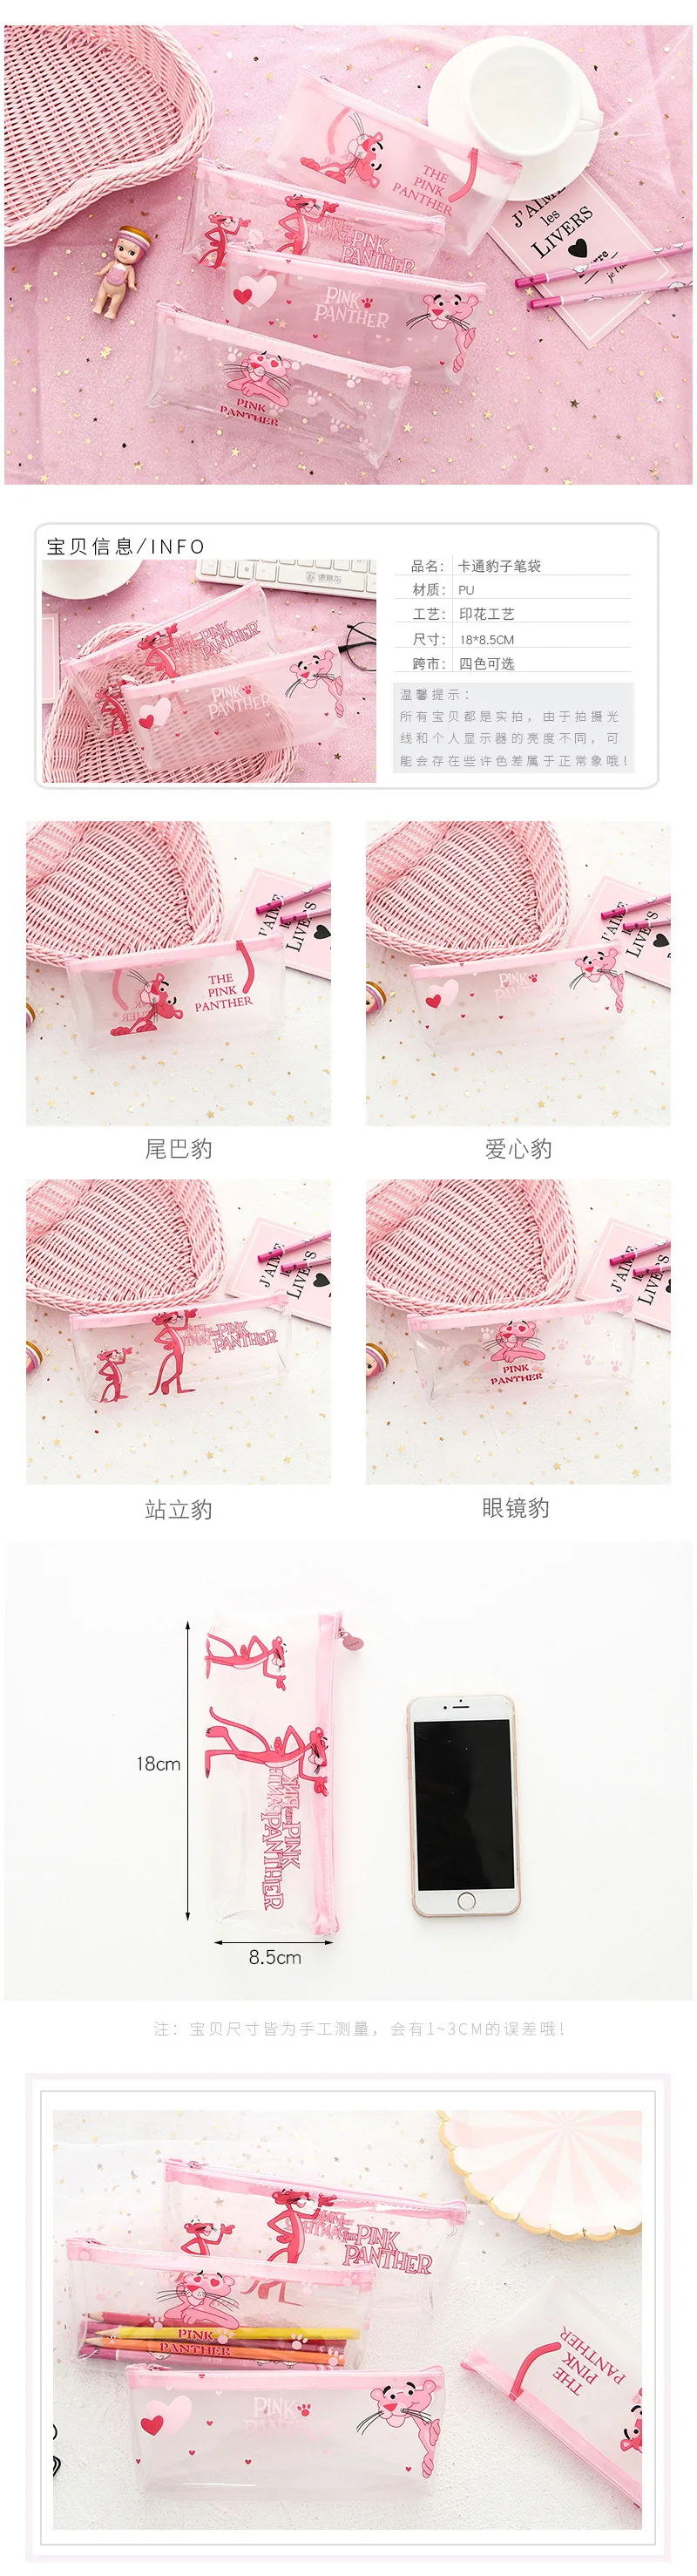 Kawaii пантера Фламинго пеналы милые прозрачные розовые пеналы для карандашей ручка коробка для девочек Bts канцелярские принадлежности для офиса школьные принадлежности